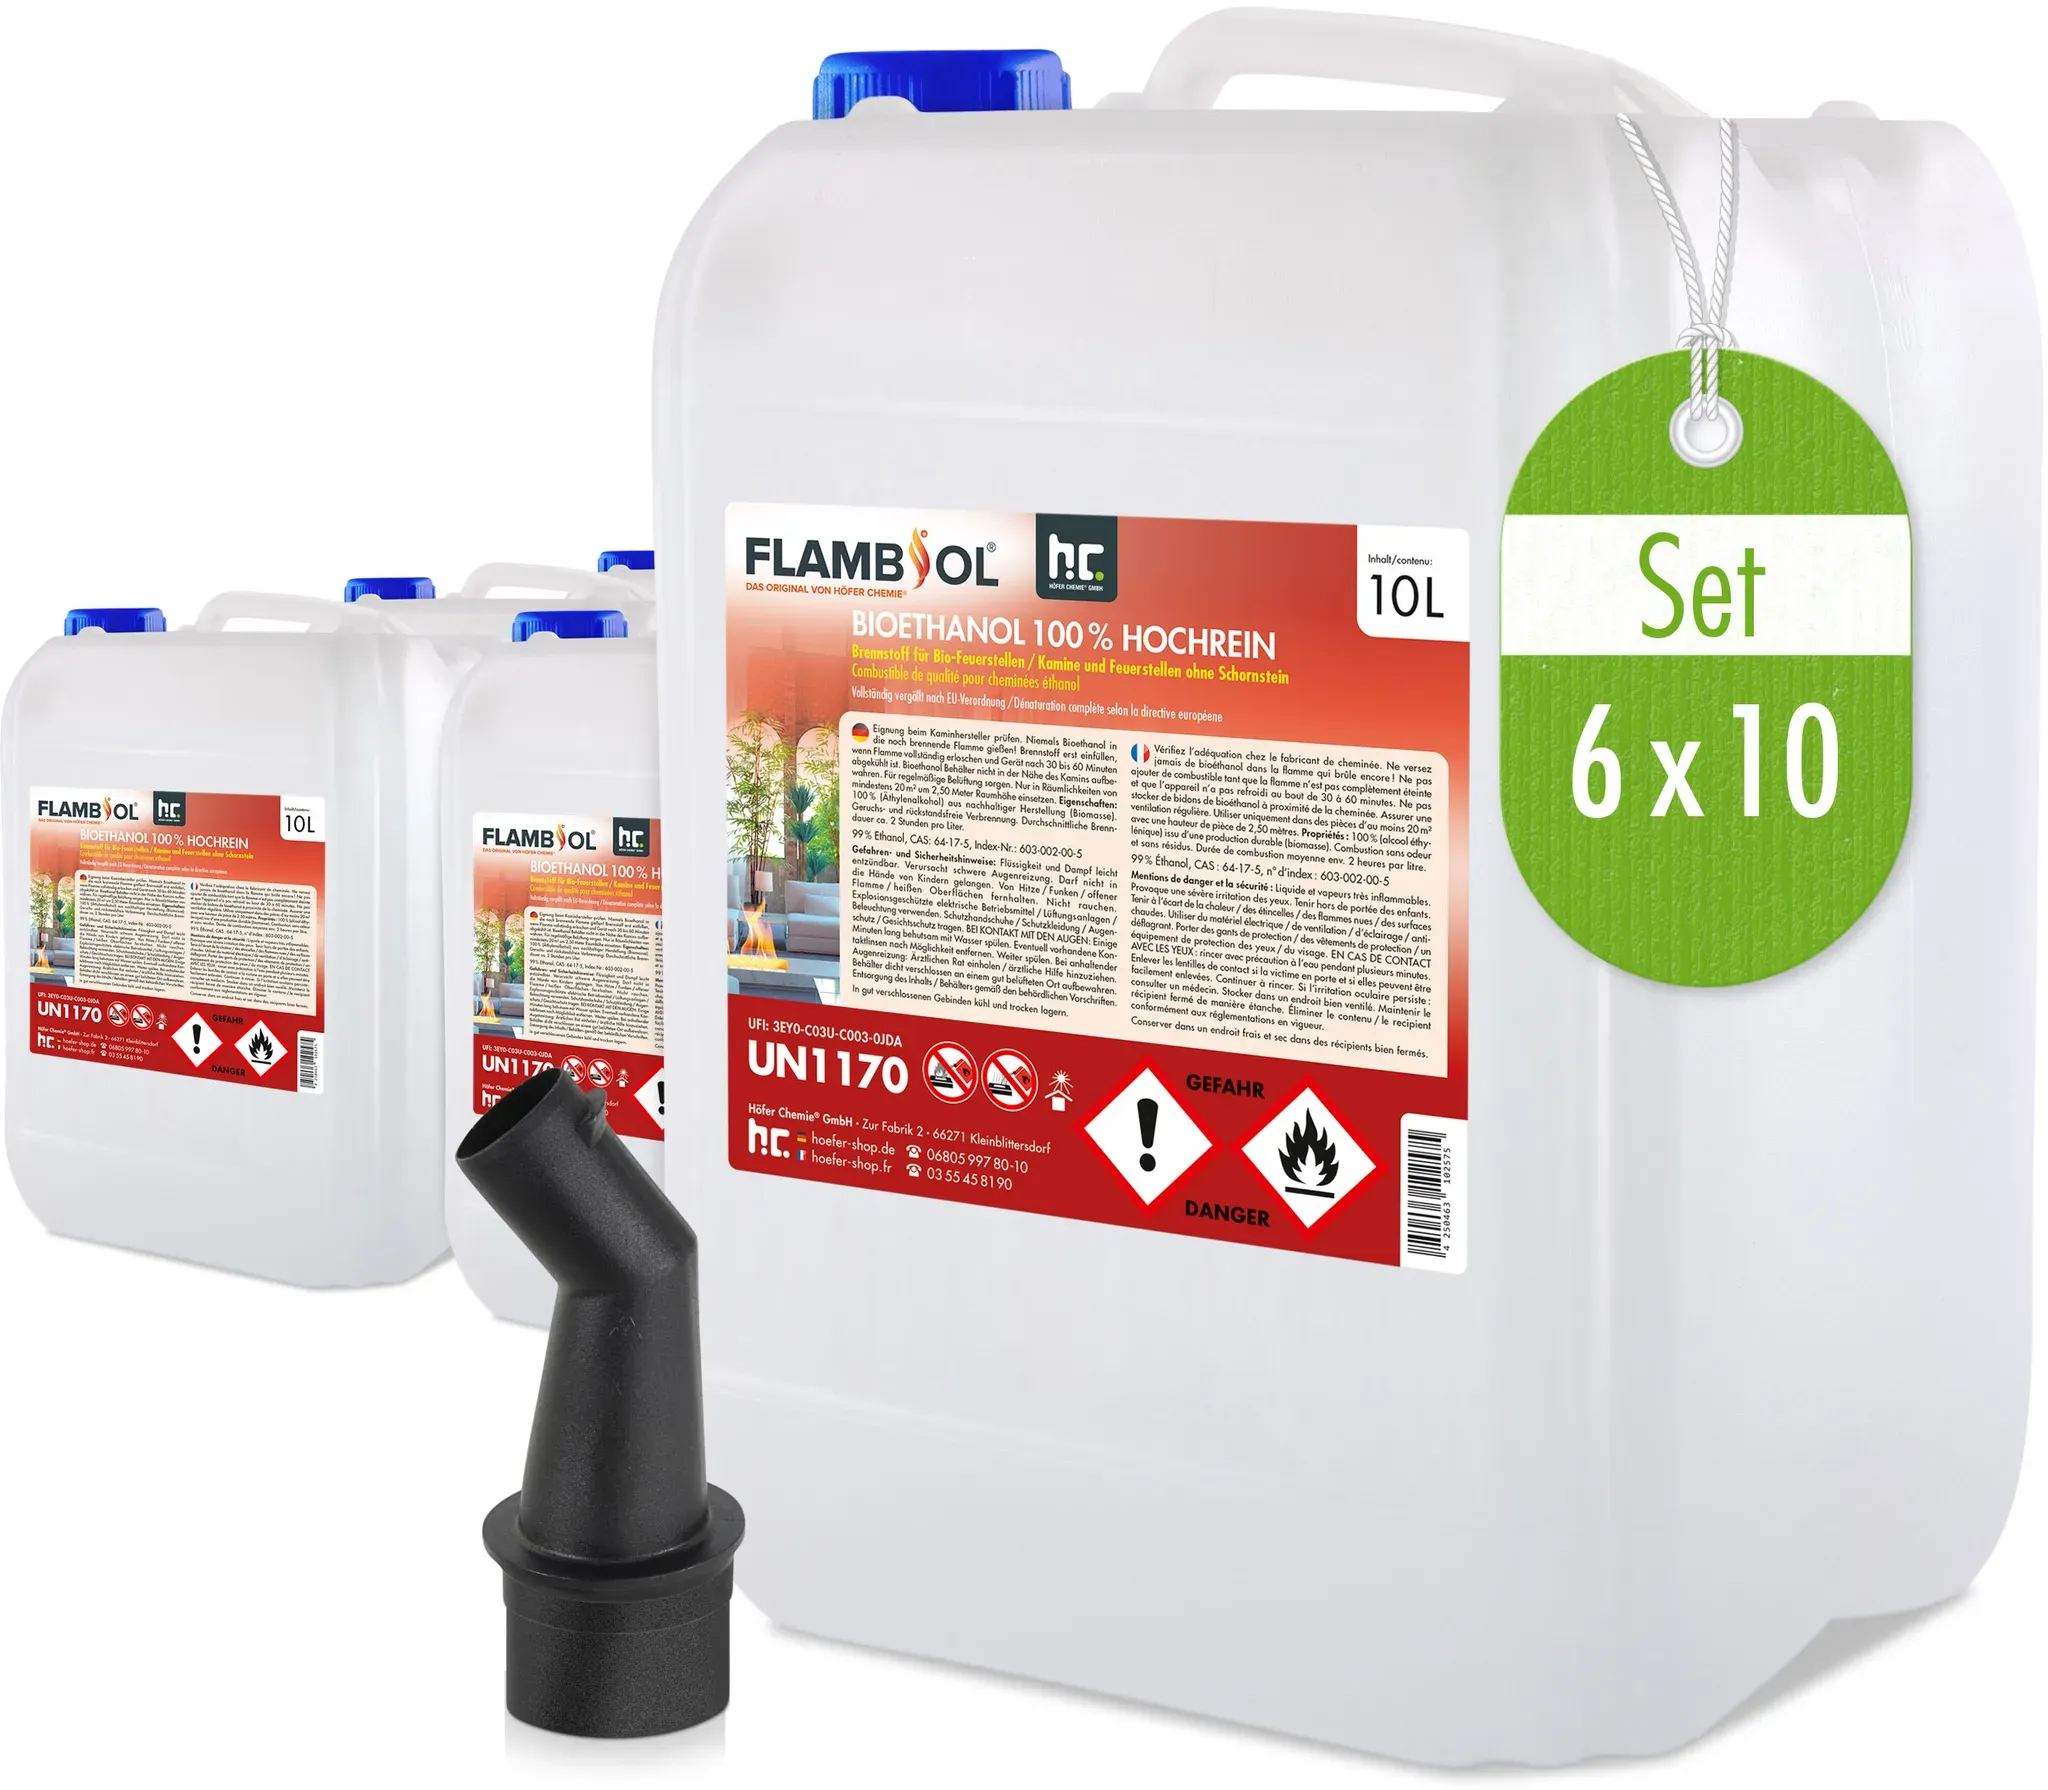 6 x 10 L FLAMBIOL® Bioéthanol 100% Ultra-pur